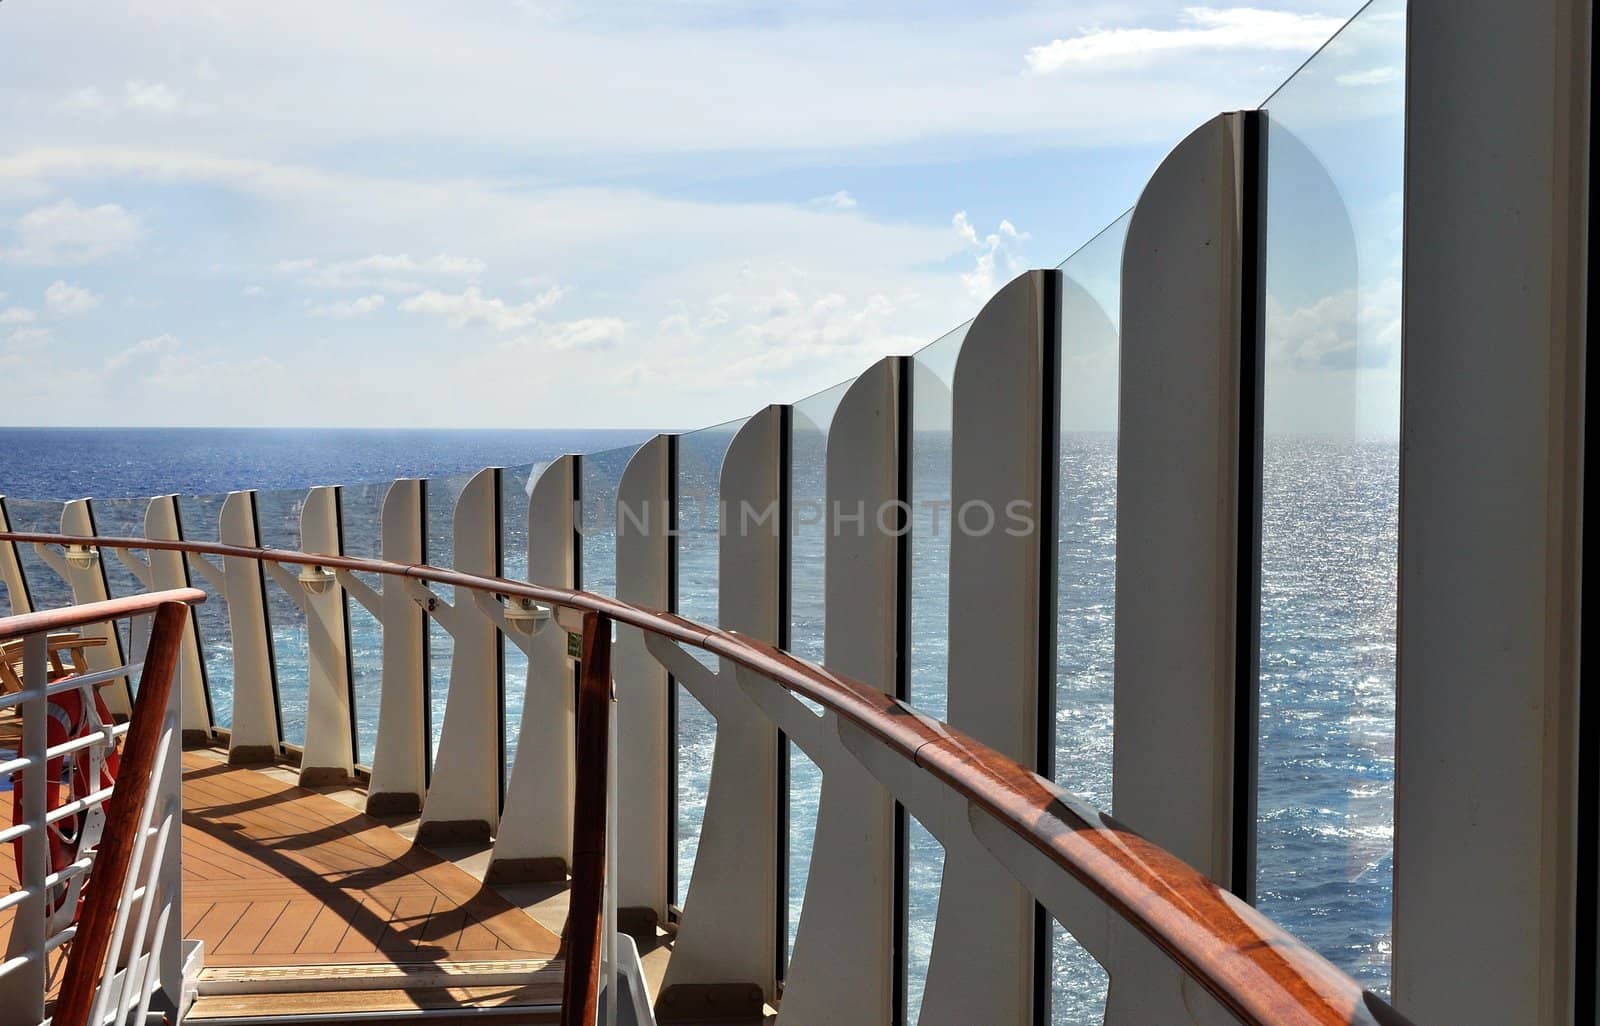 Cruise Ship Deck by fernando2148